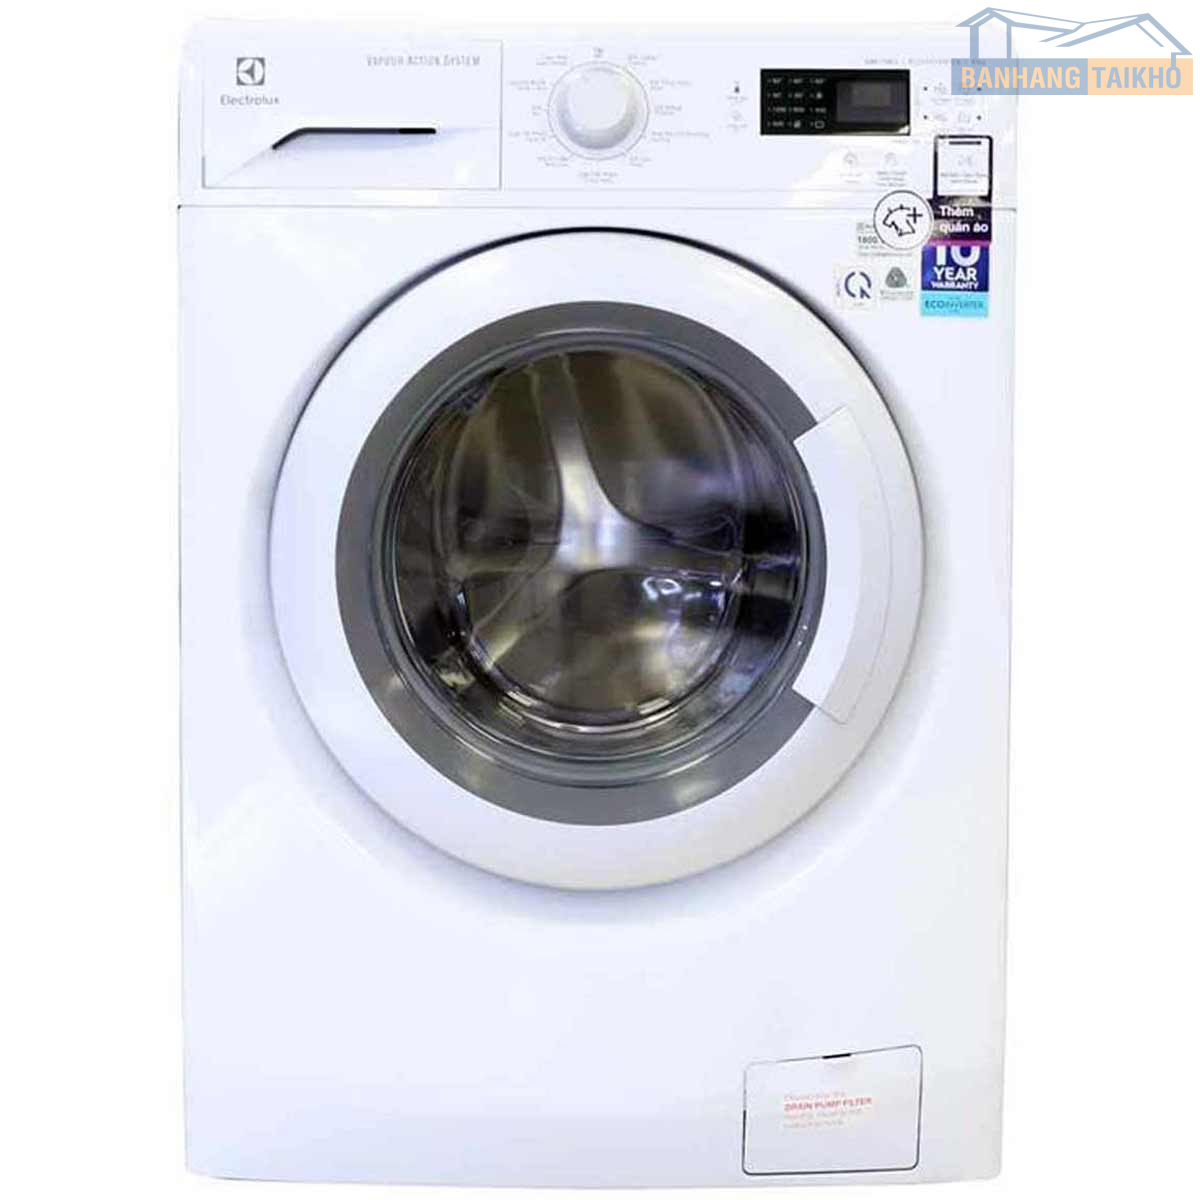 Tư vấn máy giặt Electrolux - Kho điện máy online | Tổng kho - Tổng đại lý,  phân phối HN - HCM